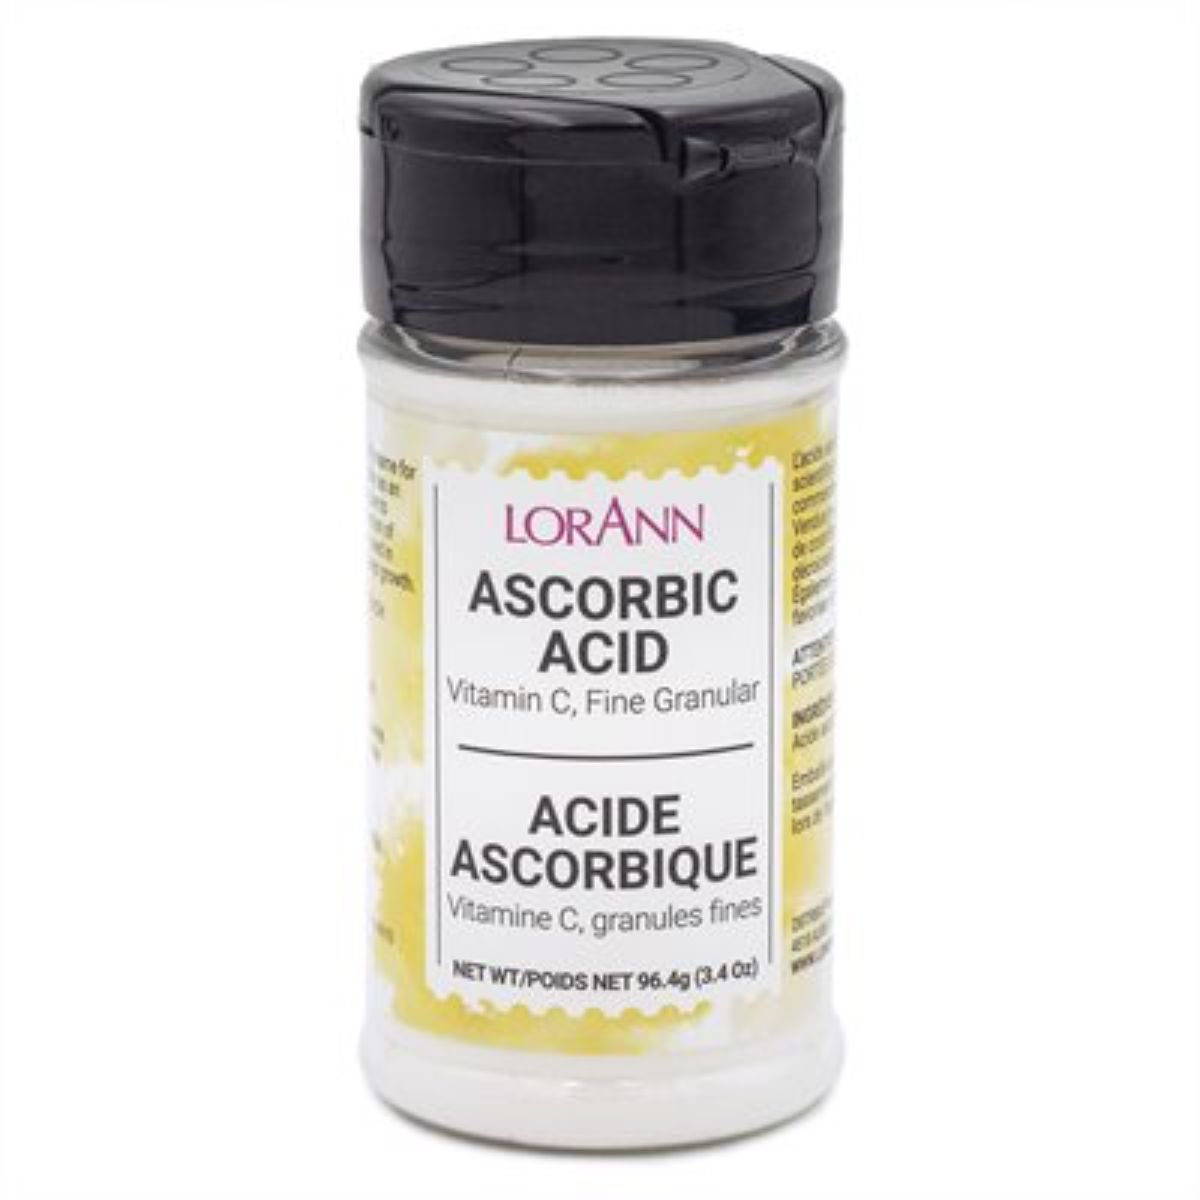 https://cdn.shopify.com/s/files/1/0146/9746/3908/products/6015-0600-Ascorbic-Acid-B_1.jpg?v=1616260516